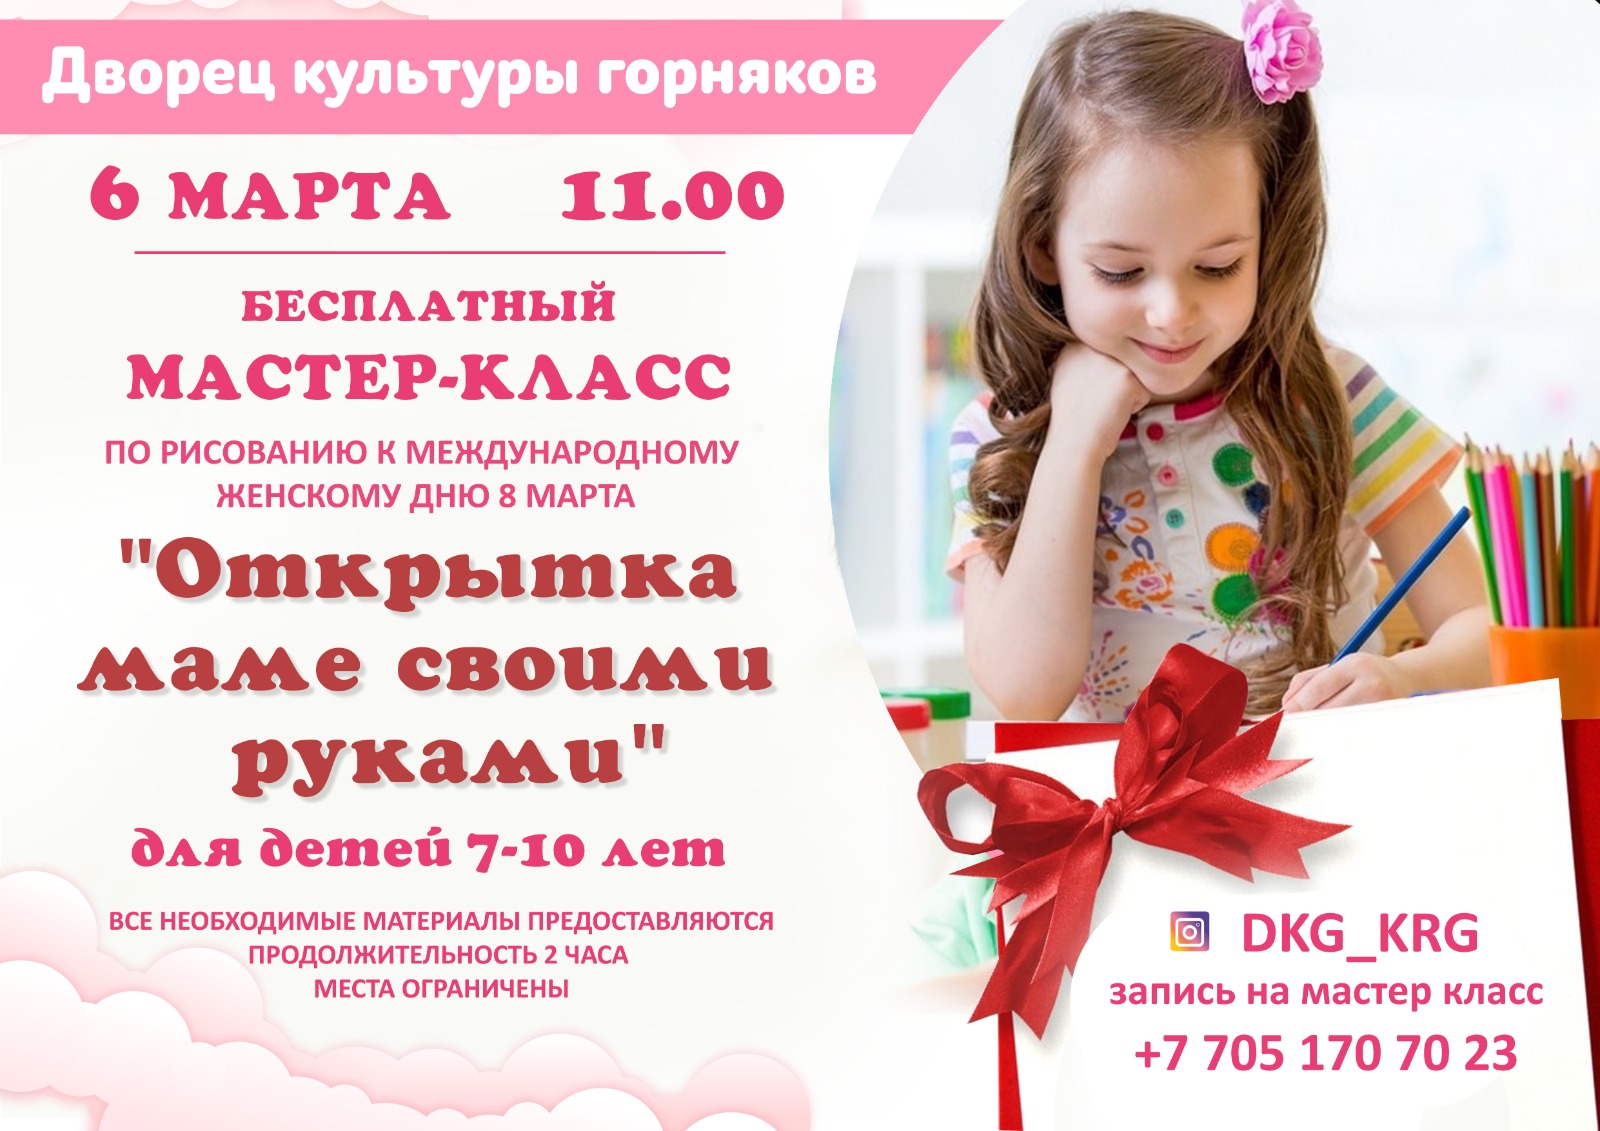 Открытка маме – бесплатный мастер-класс для детей в Караганде